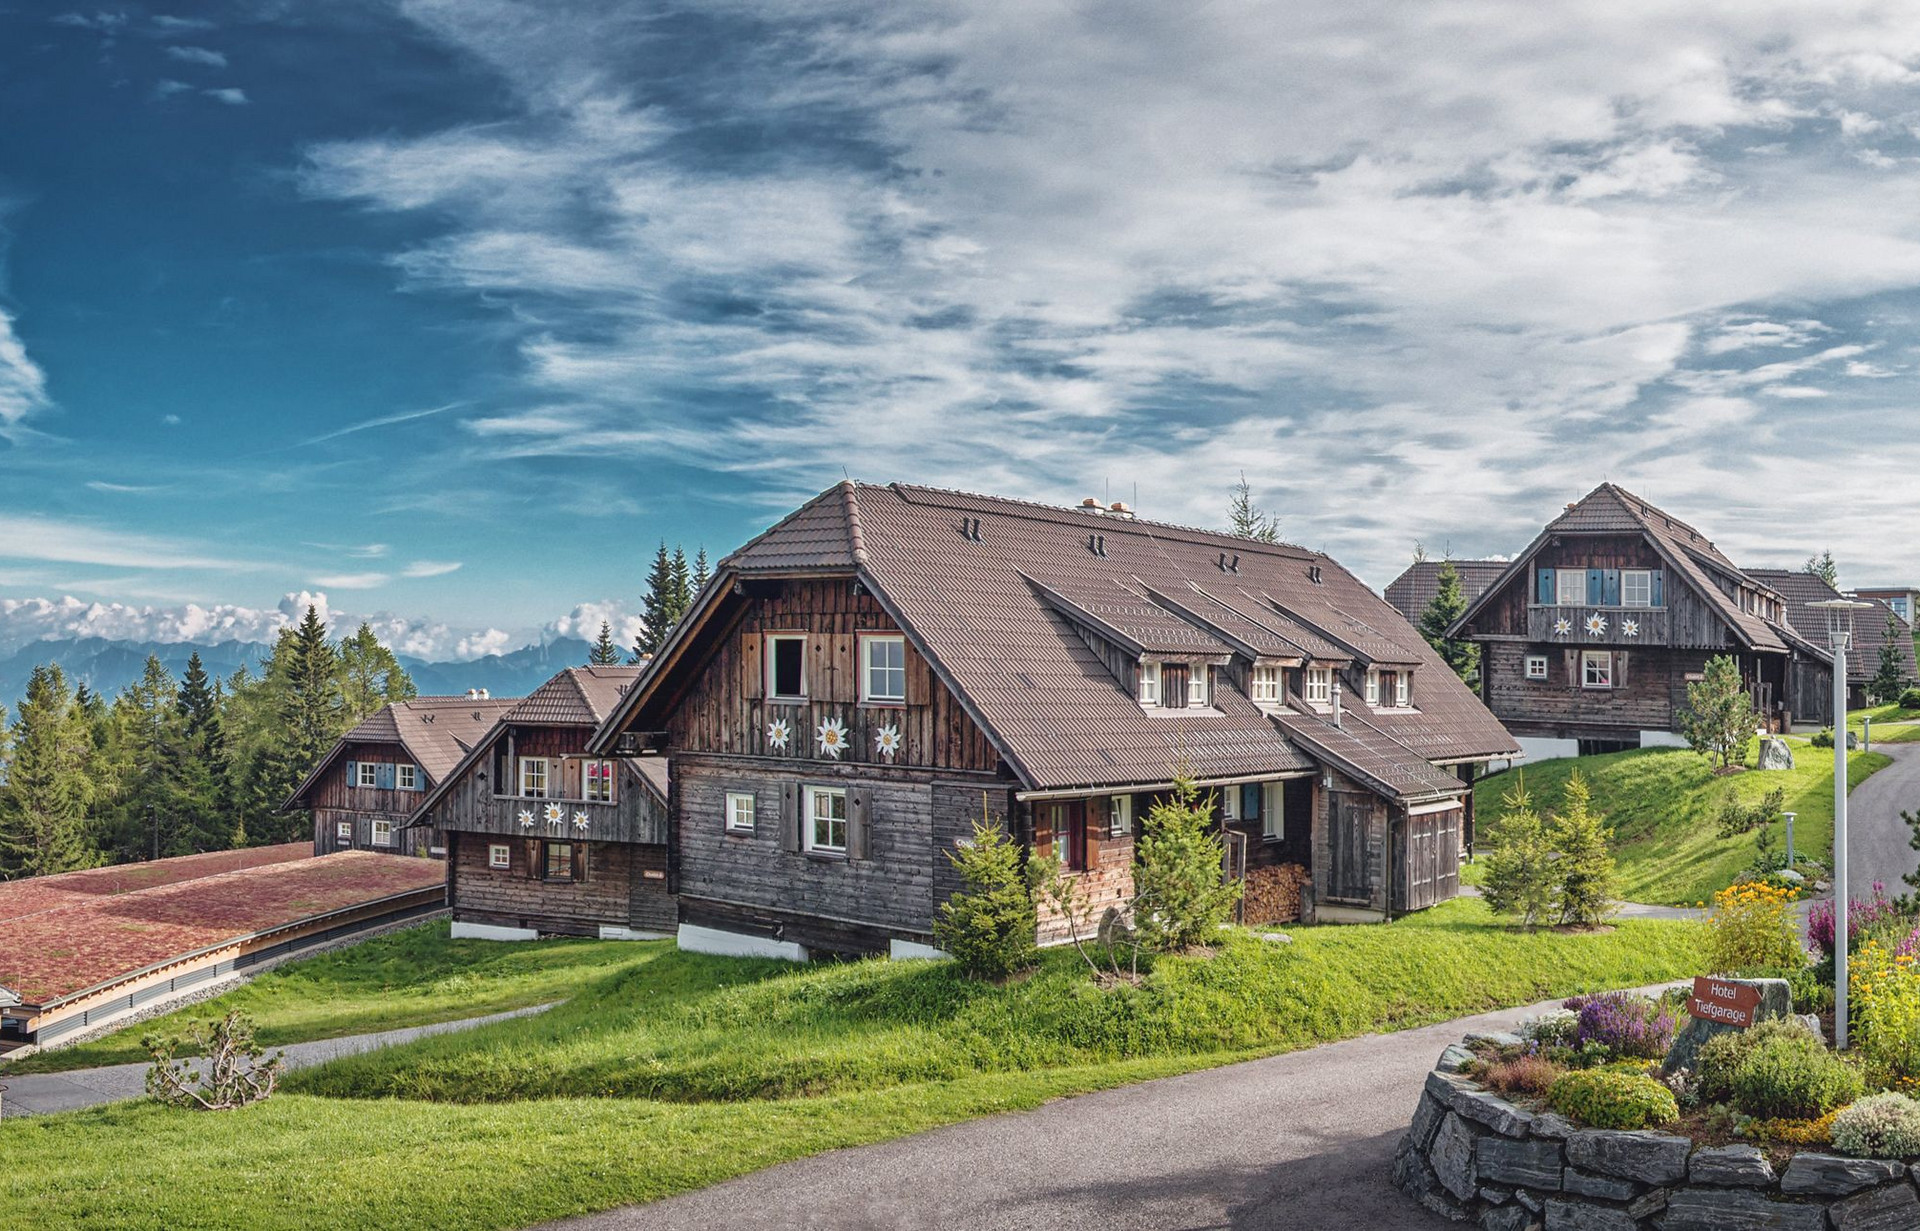 Chaletdorf am Berg im Hotel Mountain Resort Feuerberg auf der Gerlitzen Alpe in Kärnten